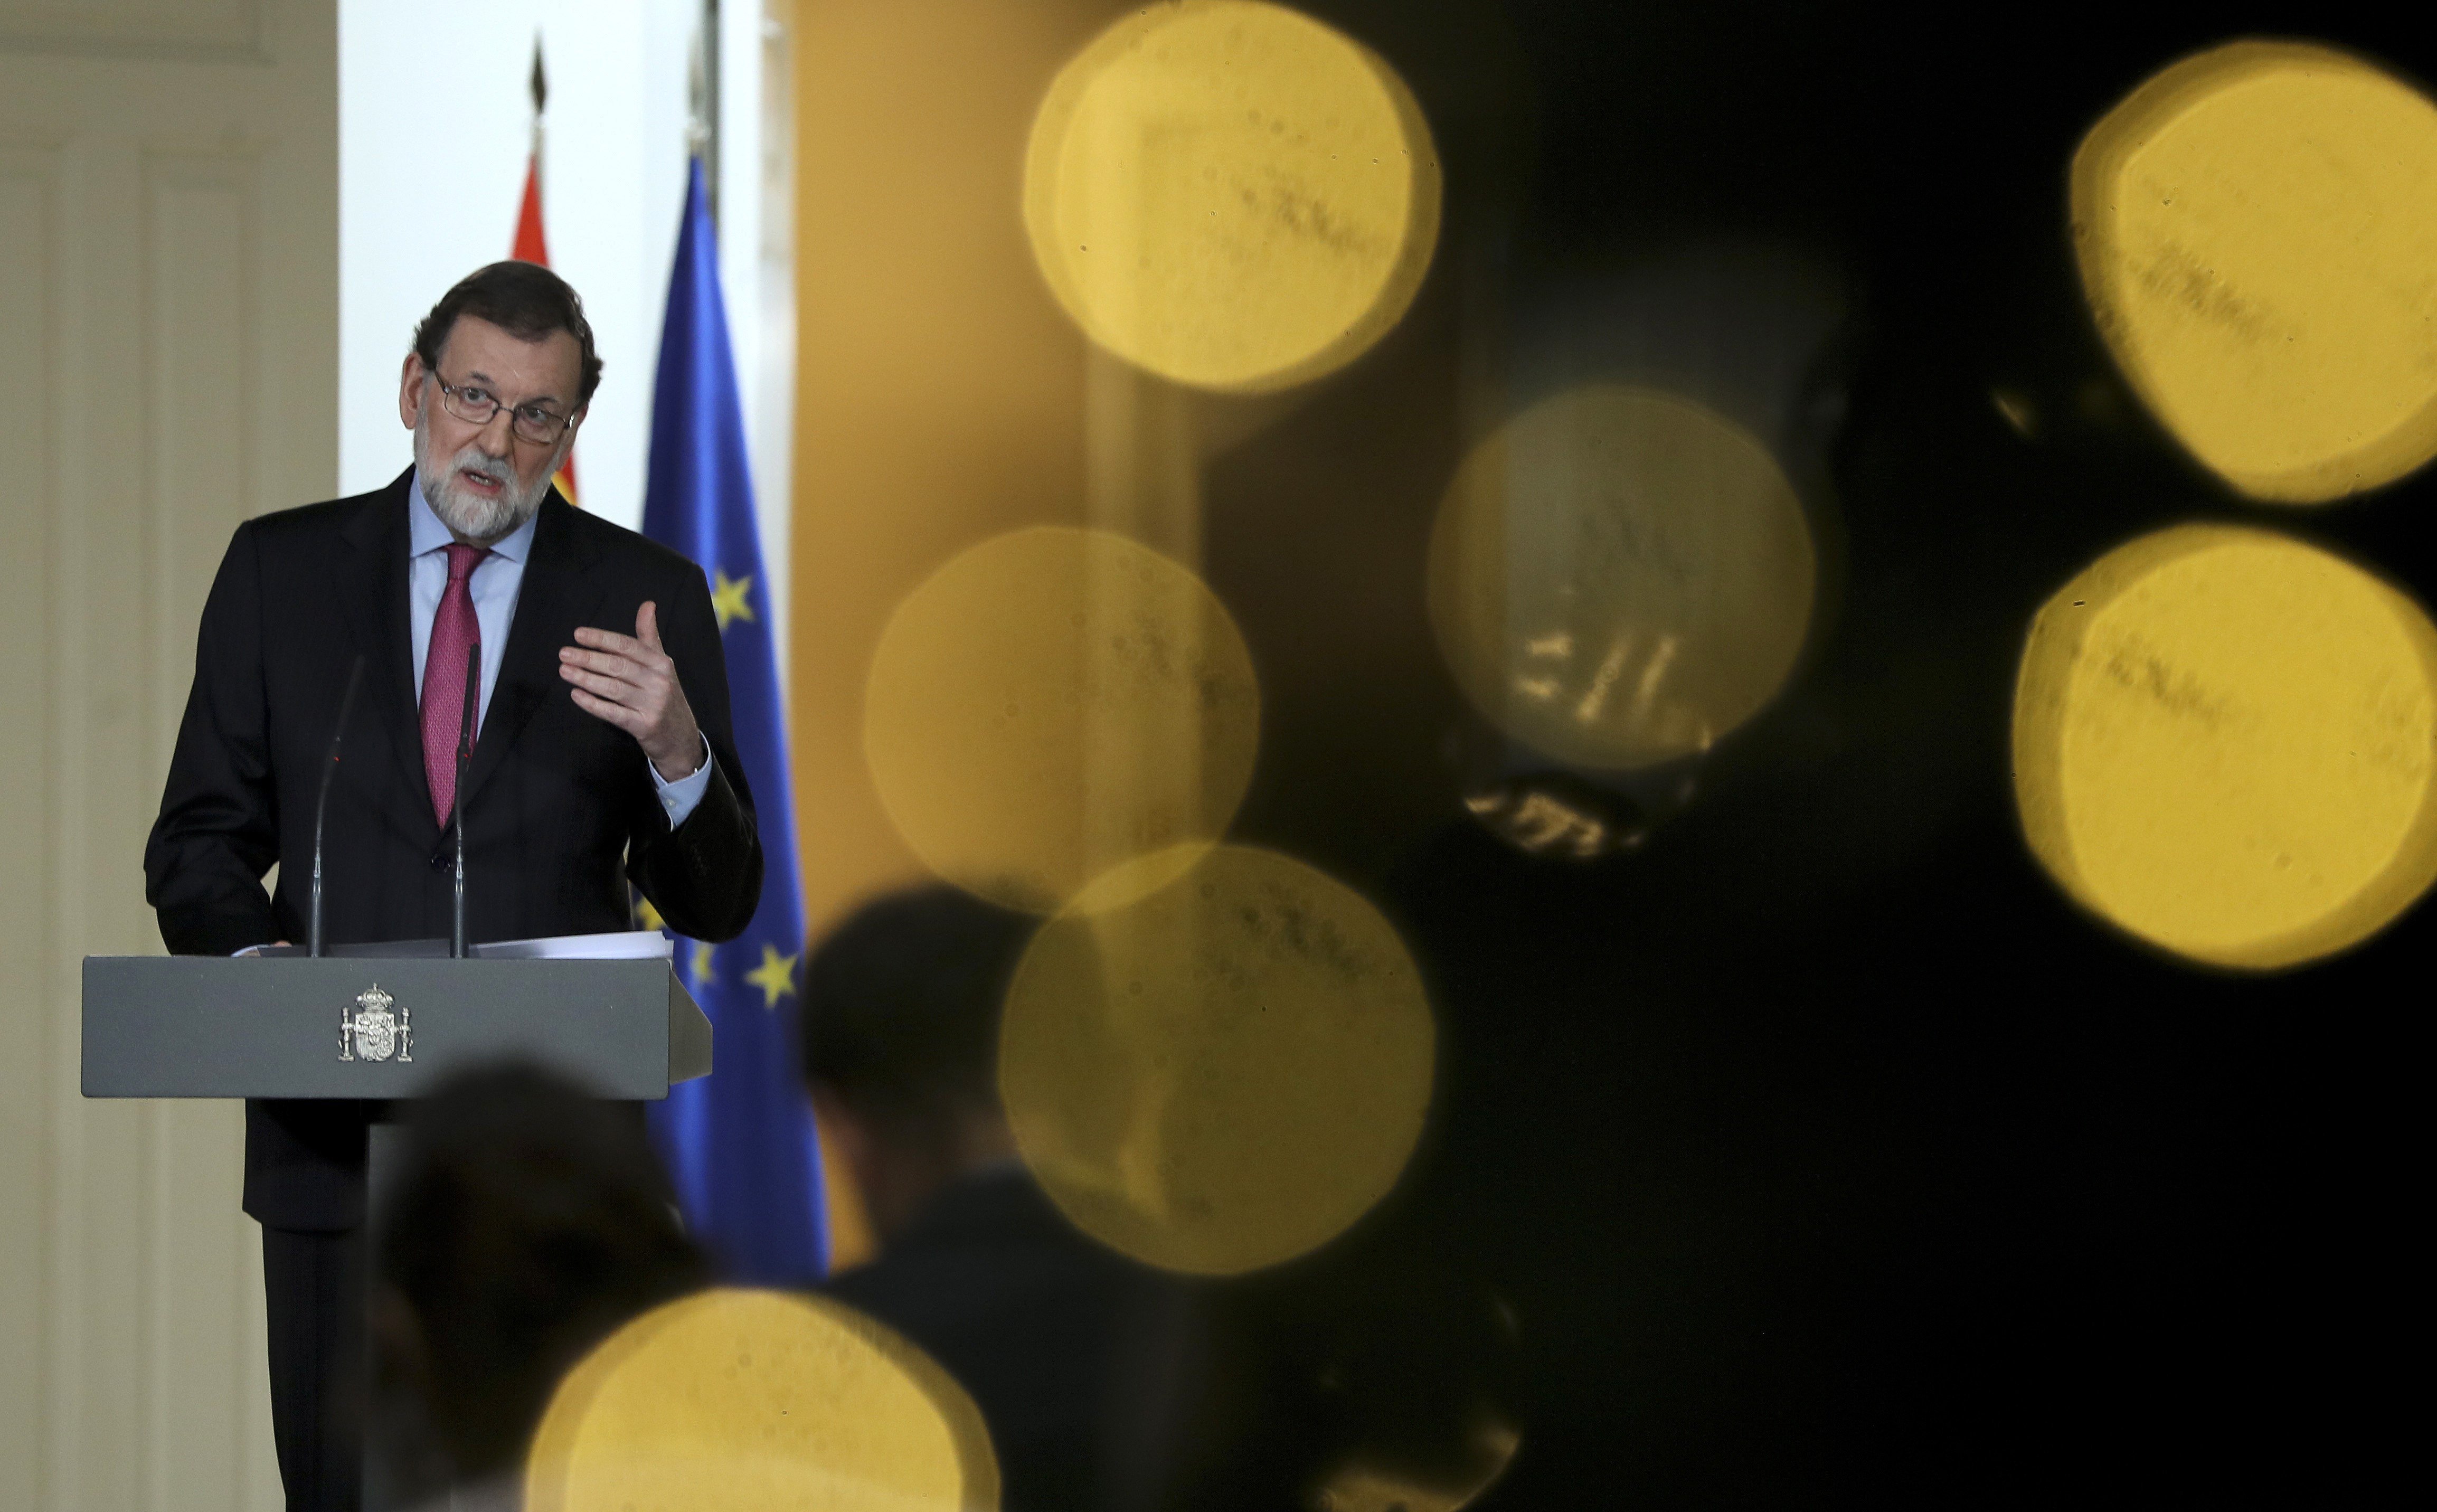 L'argument de Rajoy contra Puigdemont: "Imagini's que jo m'estigués a Lisboa"